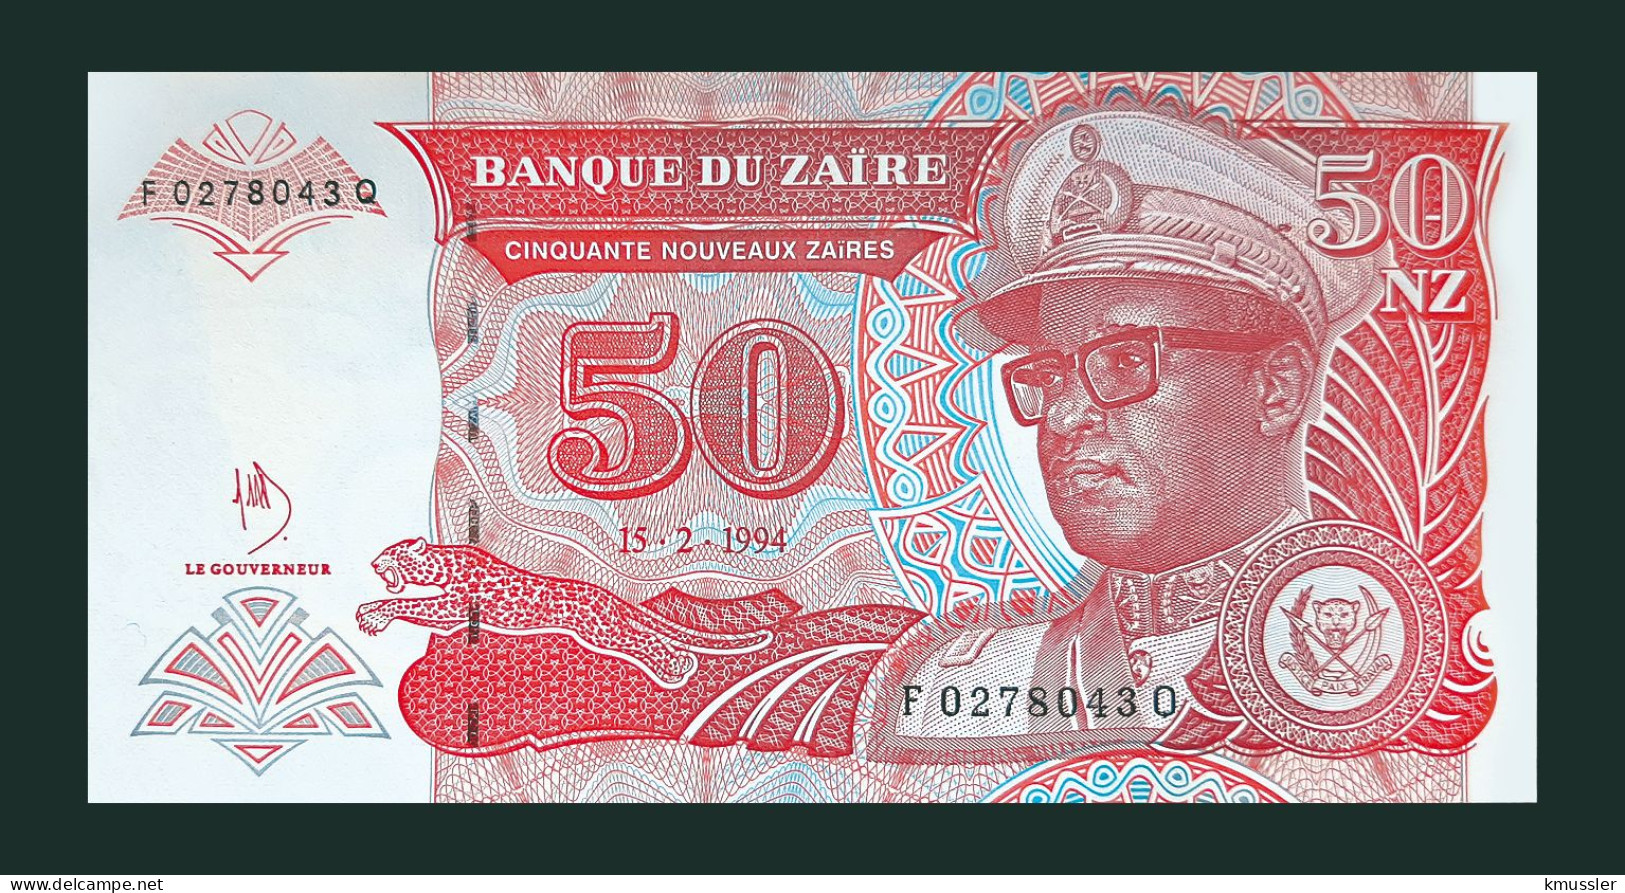 # # # Banknote Zaire 50 Nouveaux Zaires 1994 (P-59) HDMZ UNC # # # - Zaire